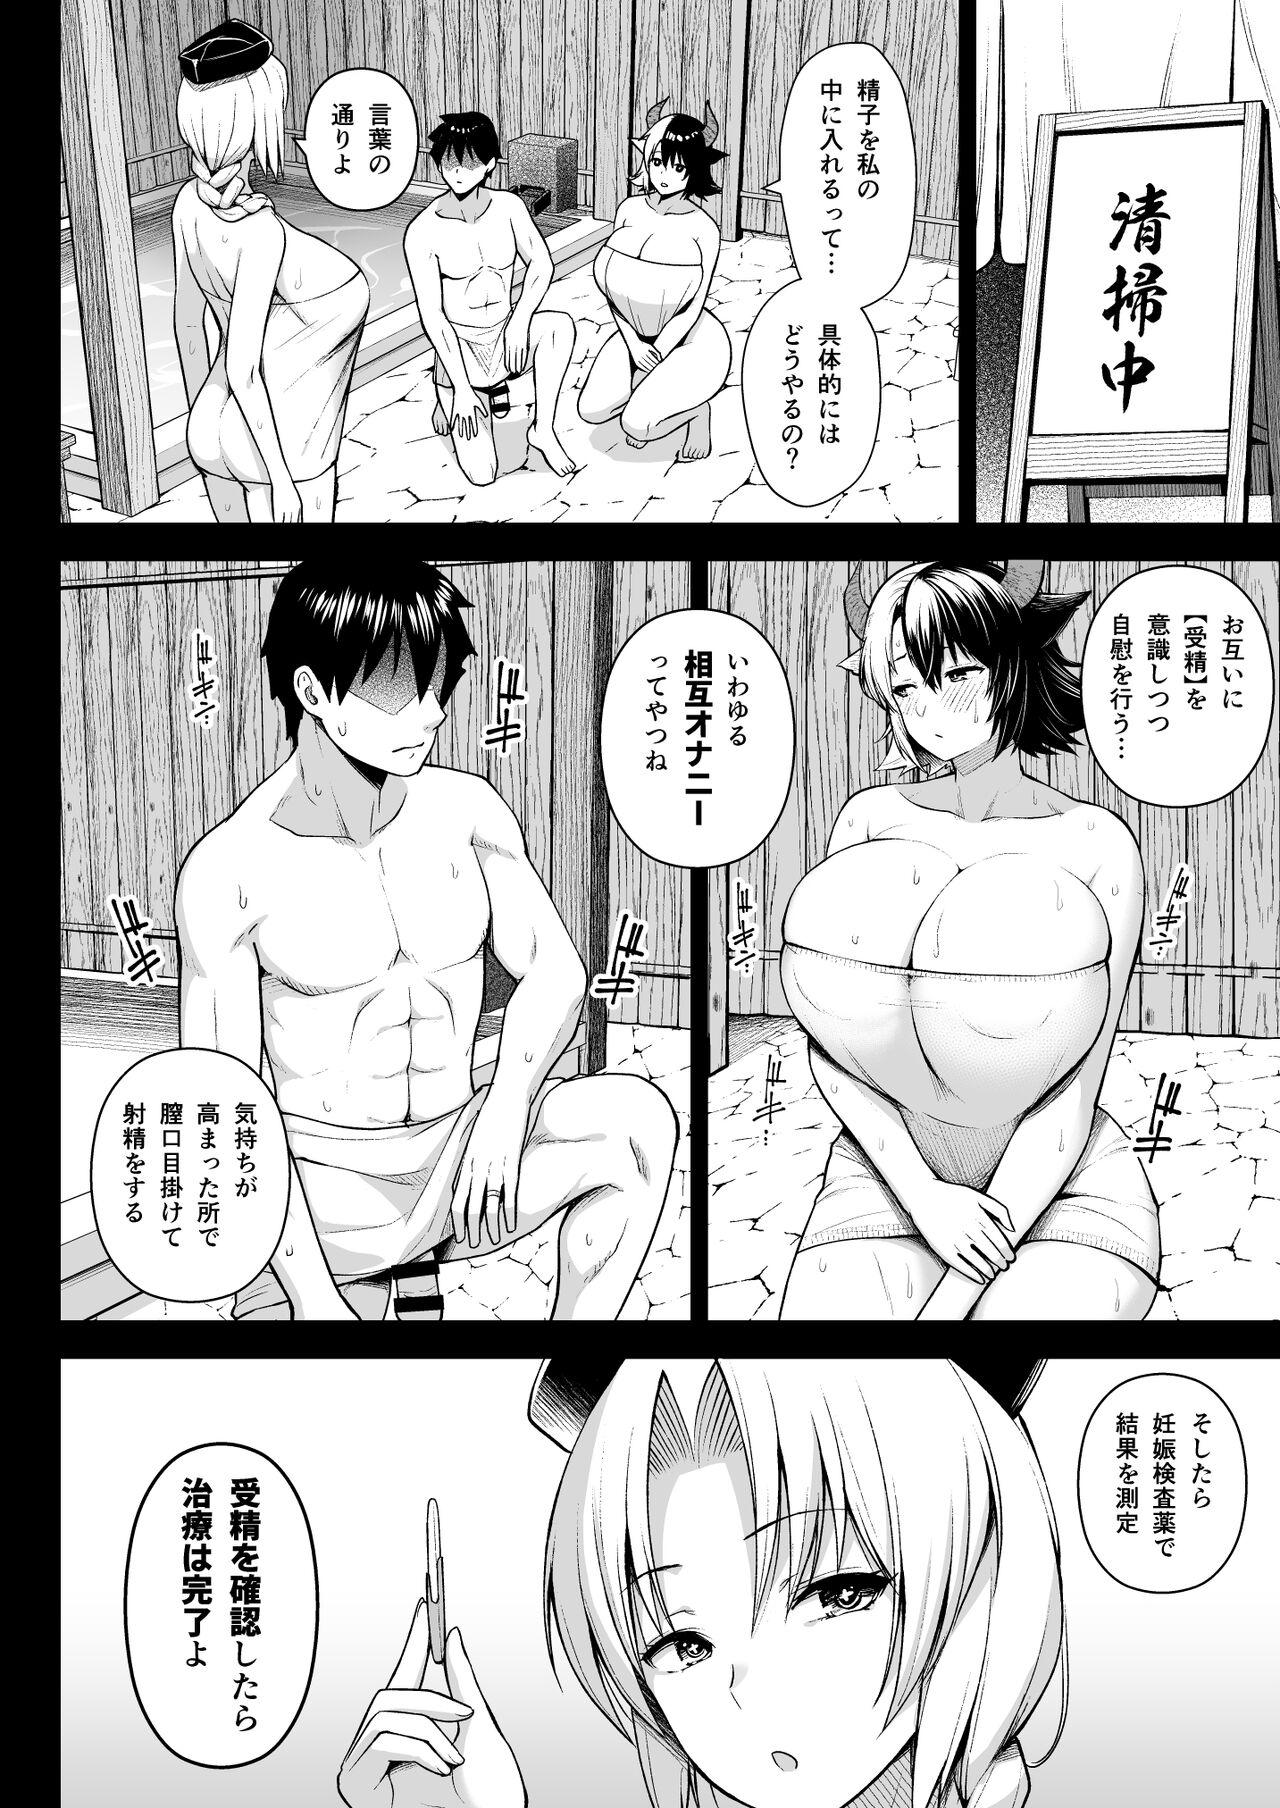 Bang Oku-san no Oppai ga Dekasugiru noga Warui! 5 - Touhou project 3some - Page 8